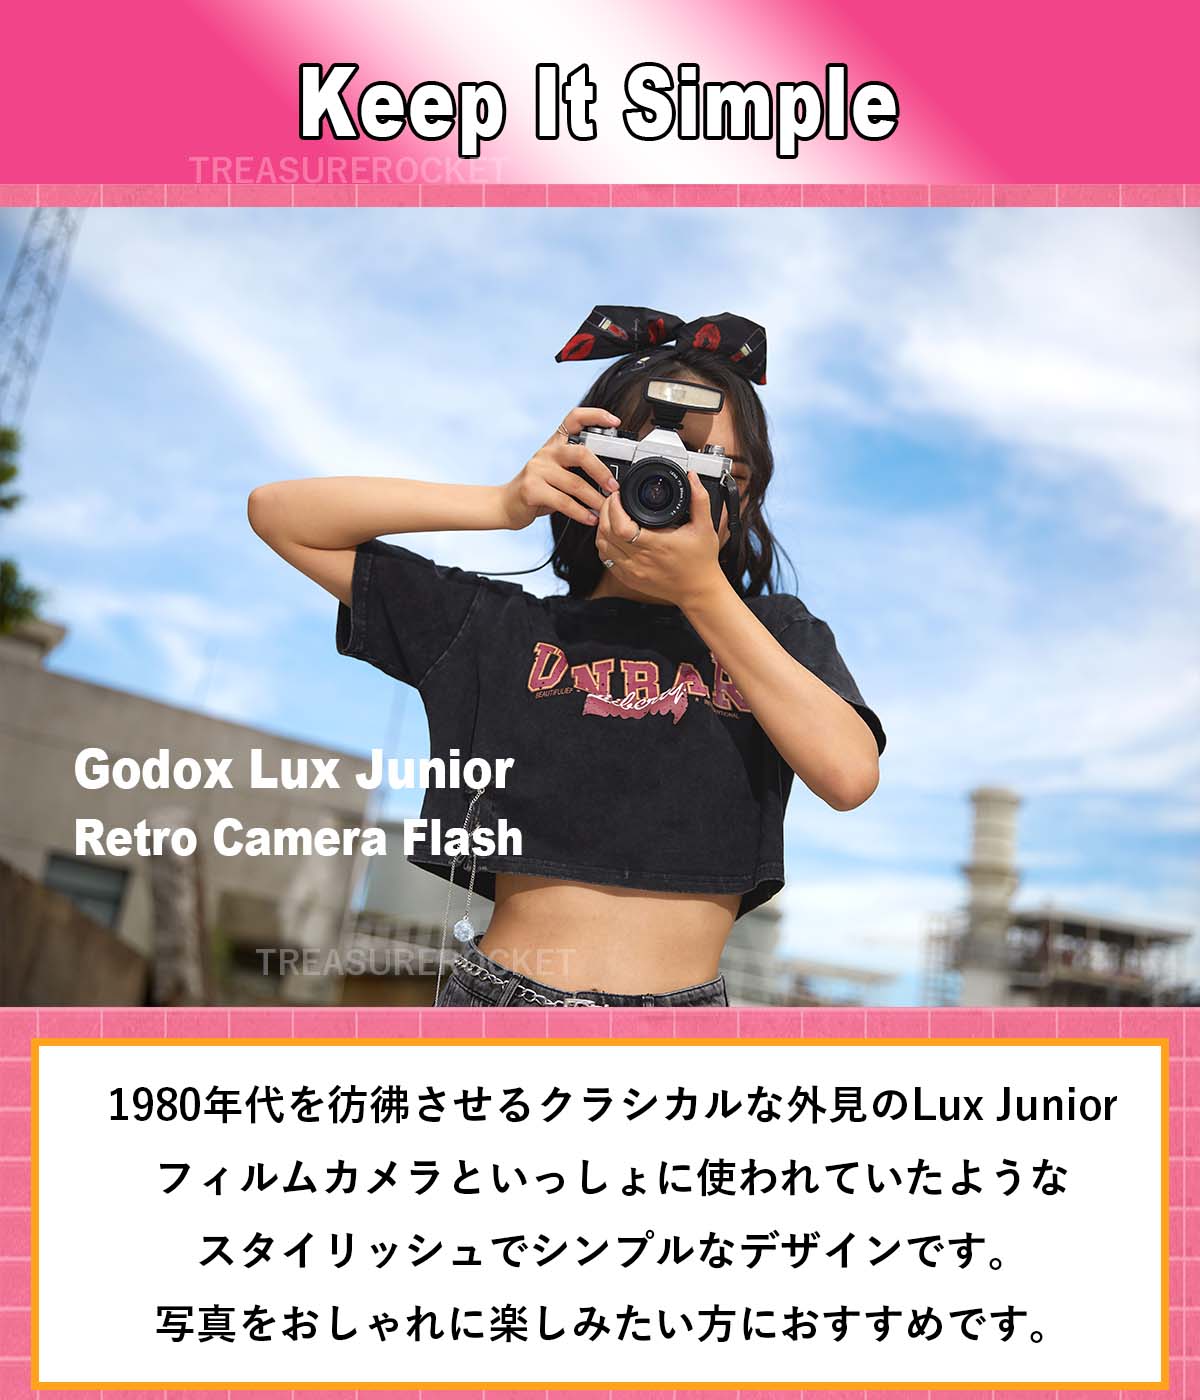 Godak Lux Junior Retro Camera Flash